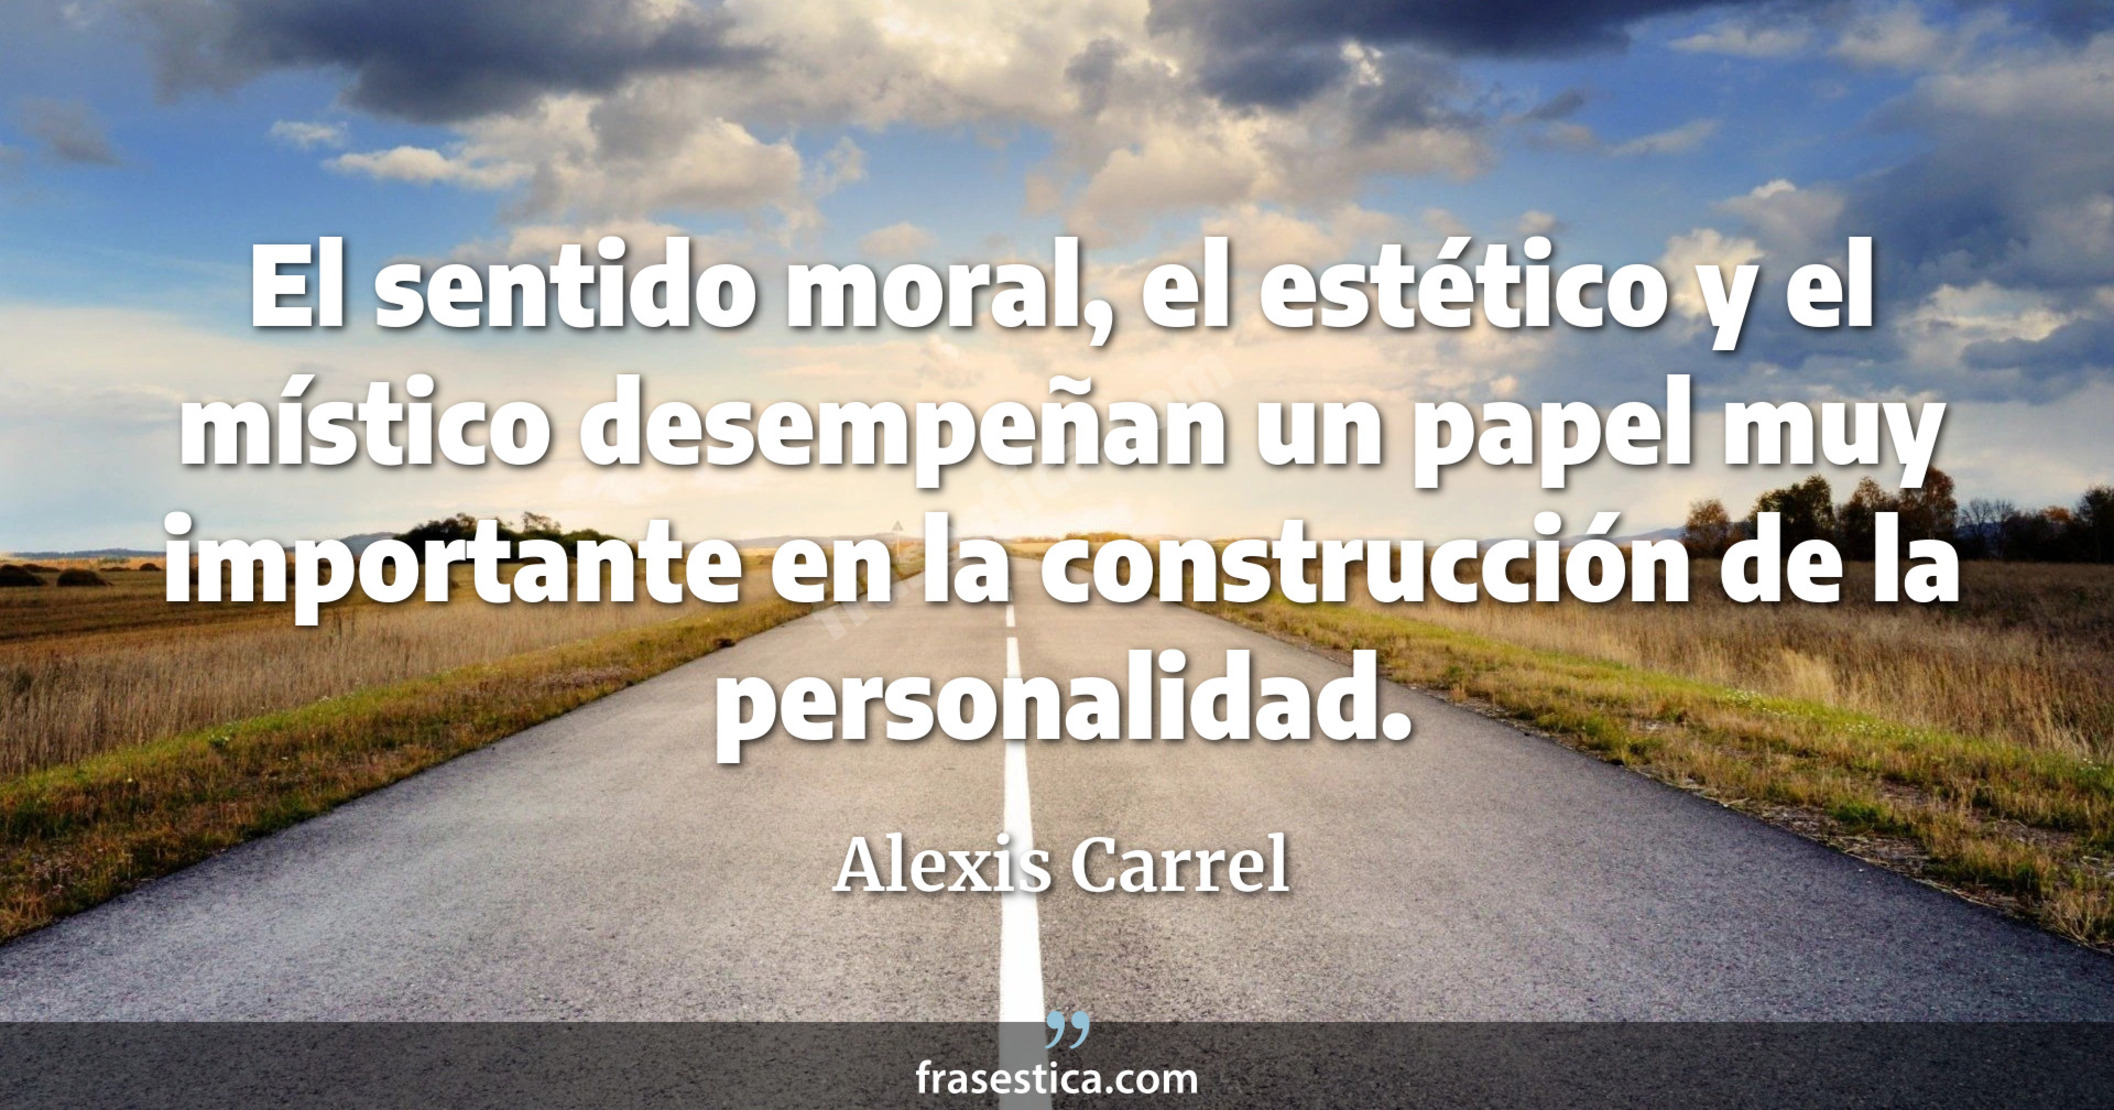 El sentido moral, el estético y el místico desempeñan un papel muy importante en la construcción de la personalidad. - Alexis Carrel